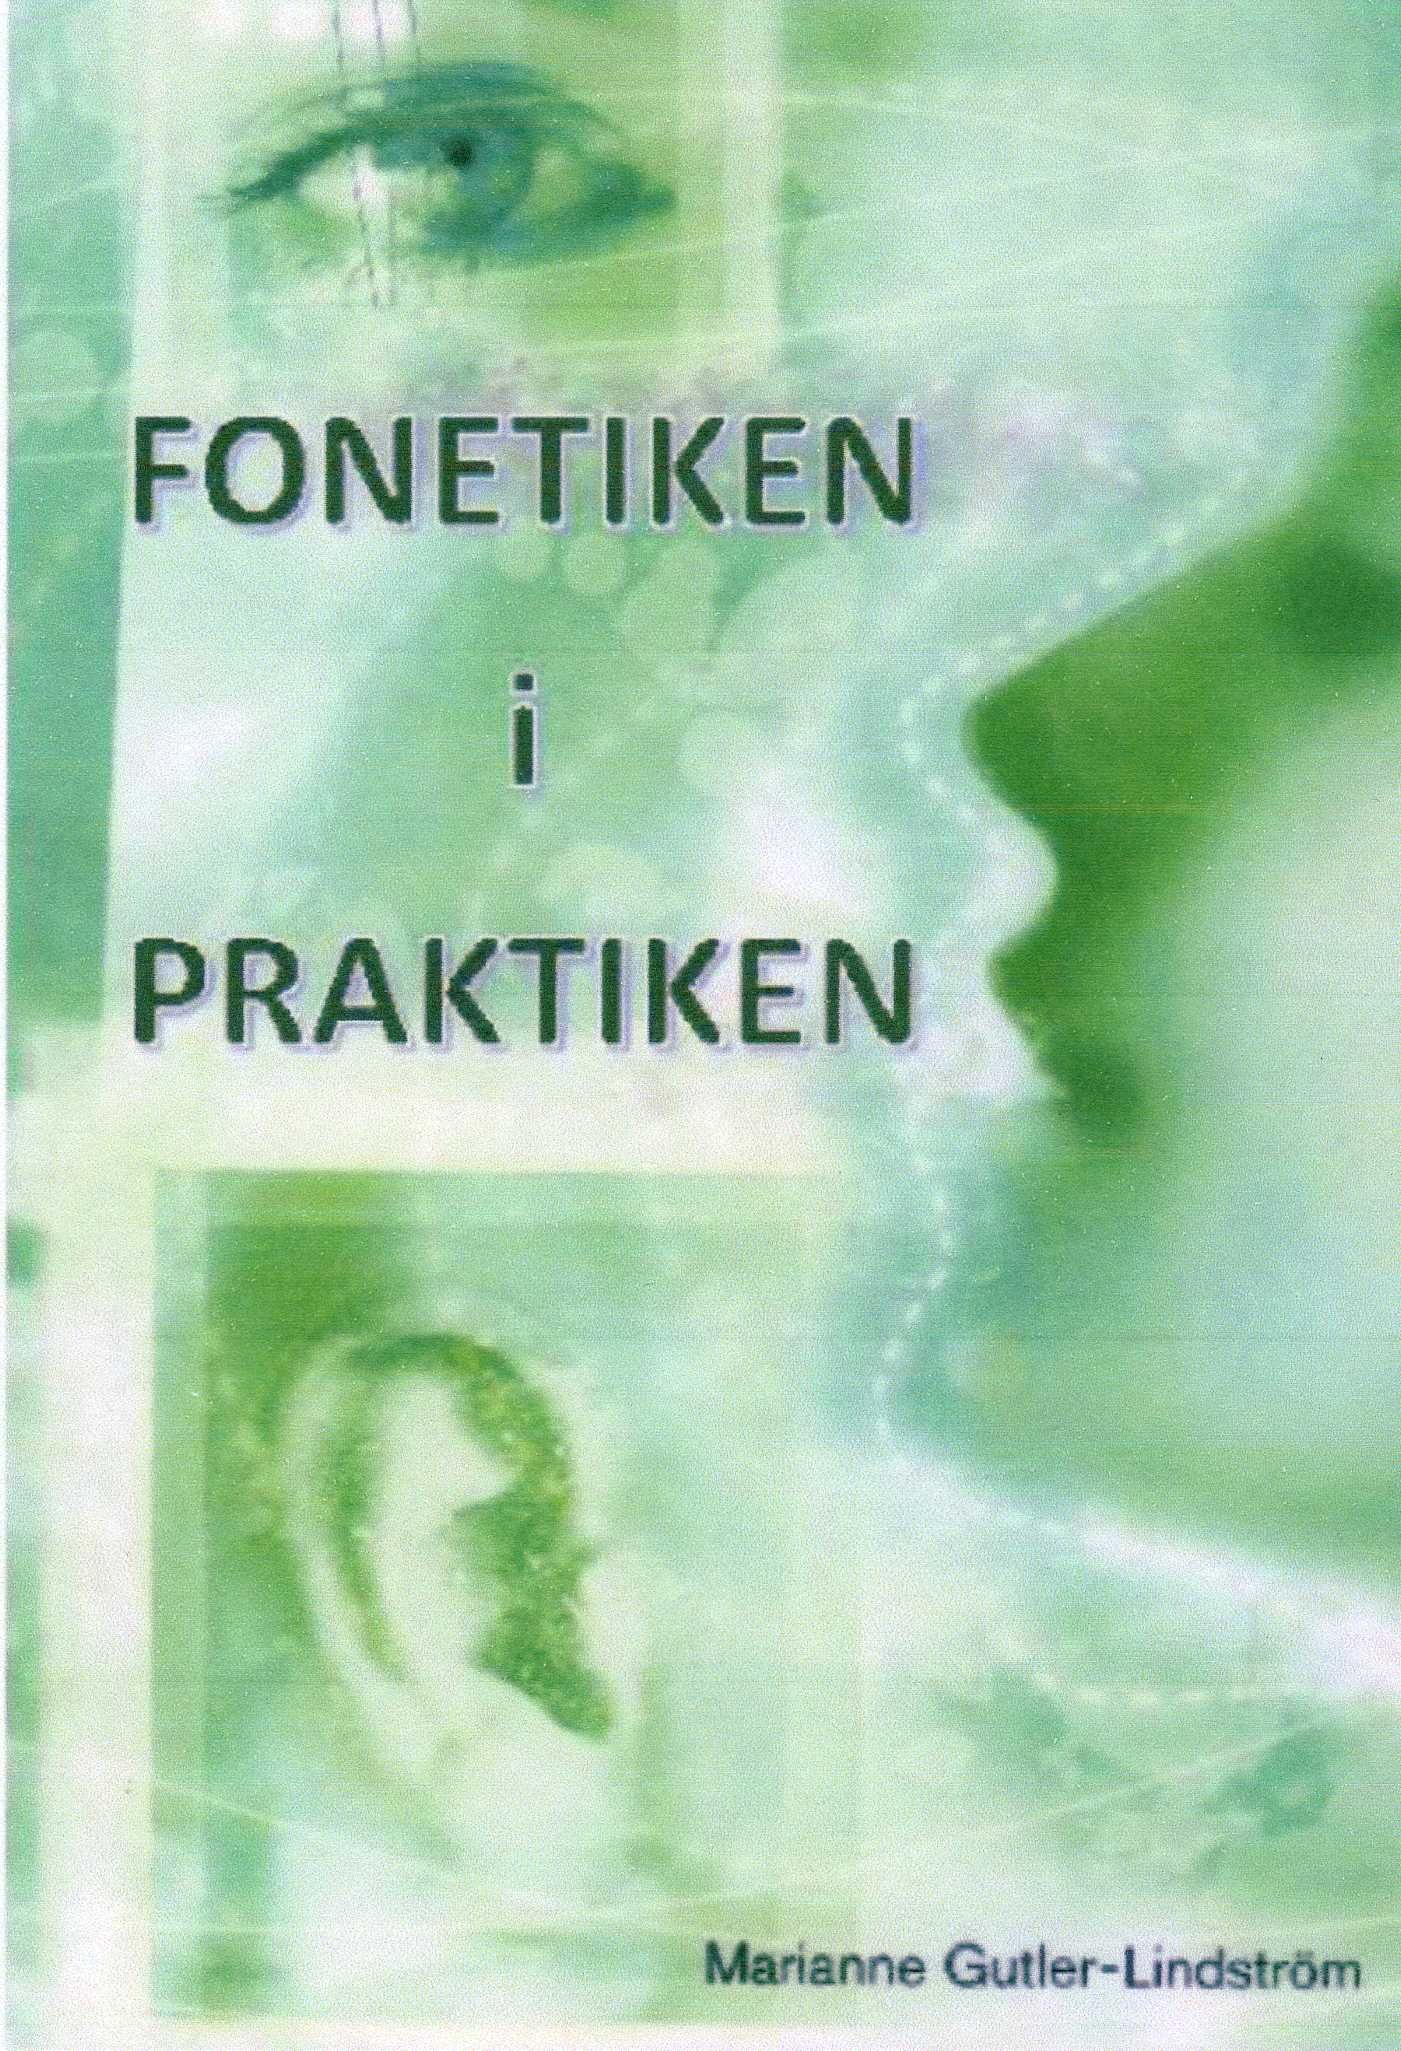 Fonetiken i praktiken, e-bog af Marianne Gutler Lindström